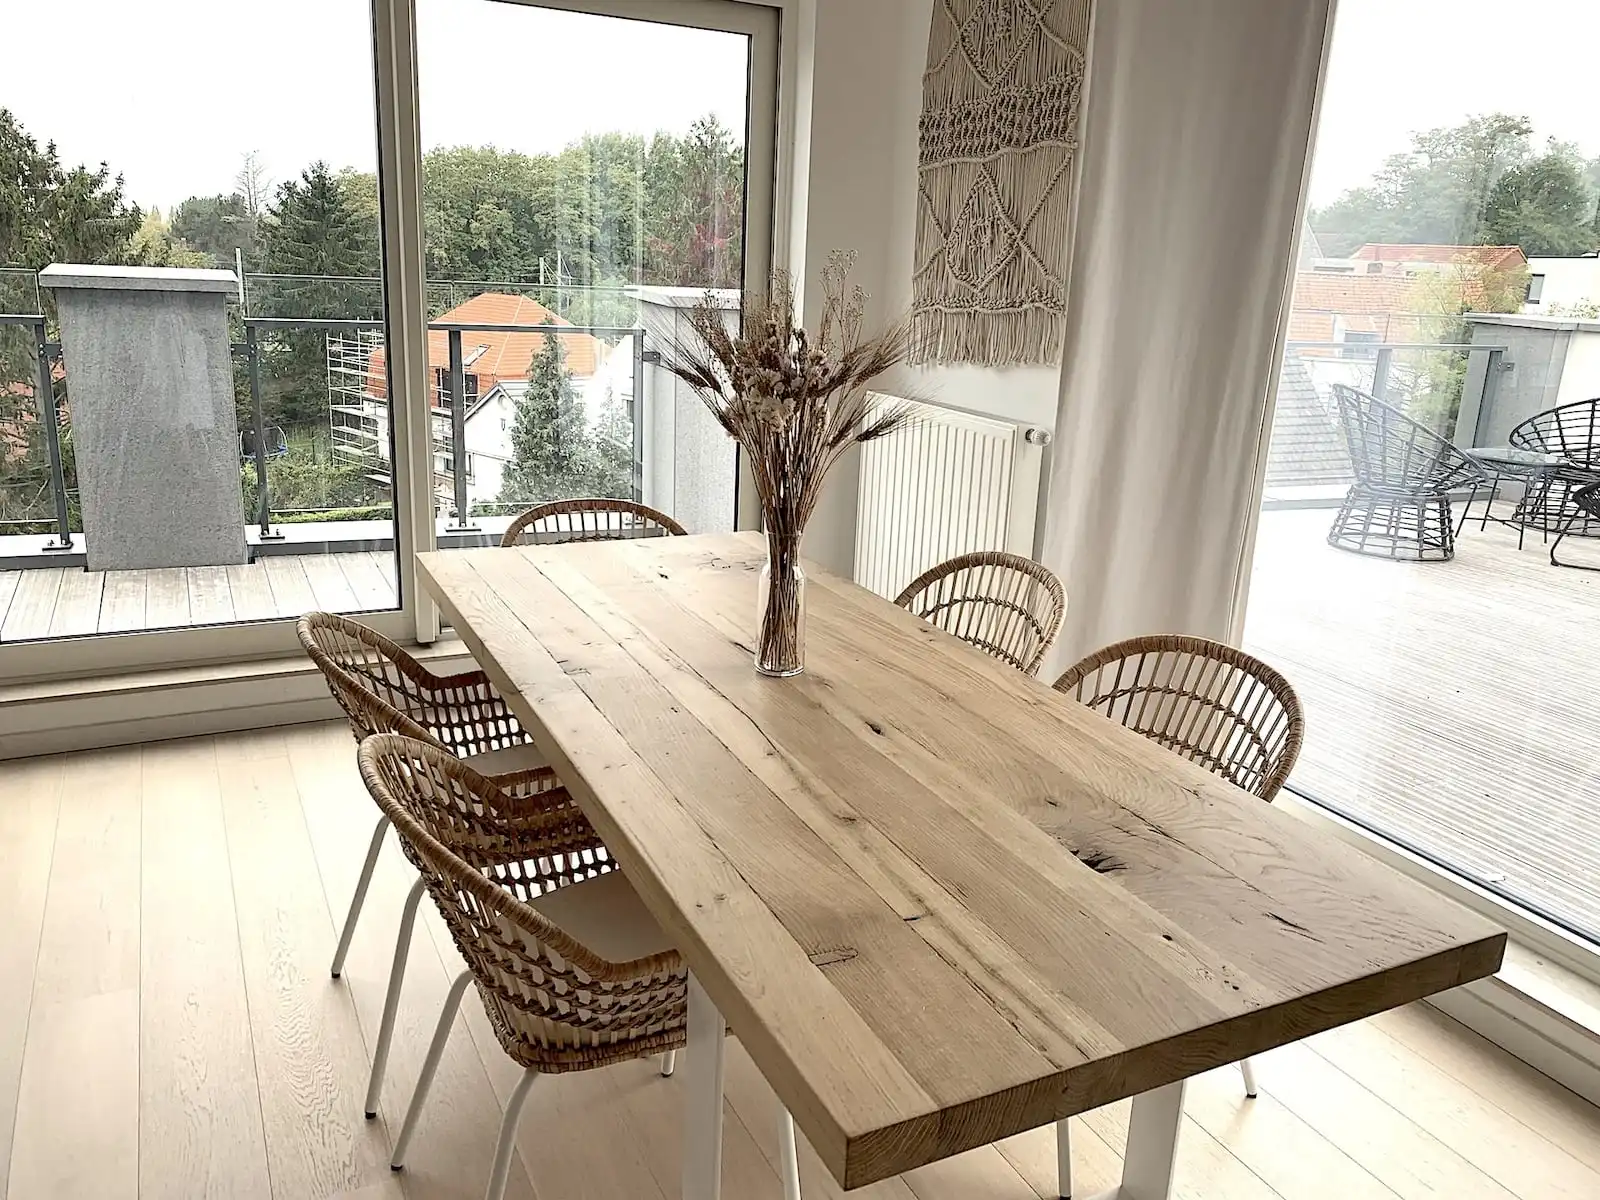  Espace repas élégant avec table en bois rustique et chaises en rotin, grande fenêtre donnant sur un balcon et décoration murale bohème. 